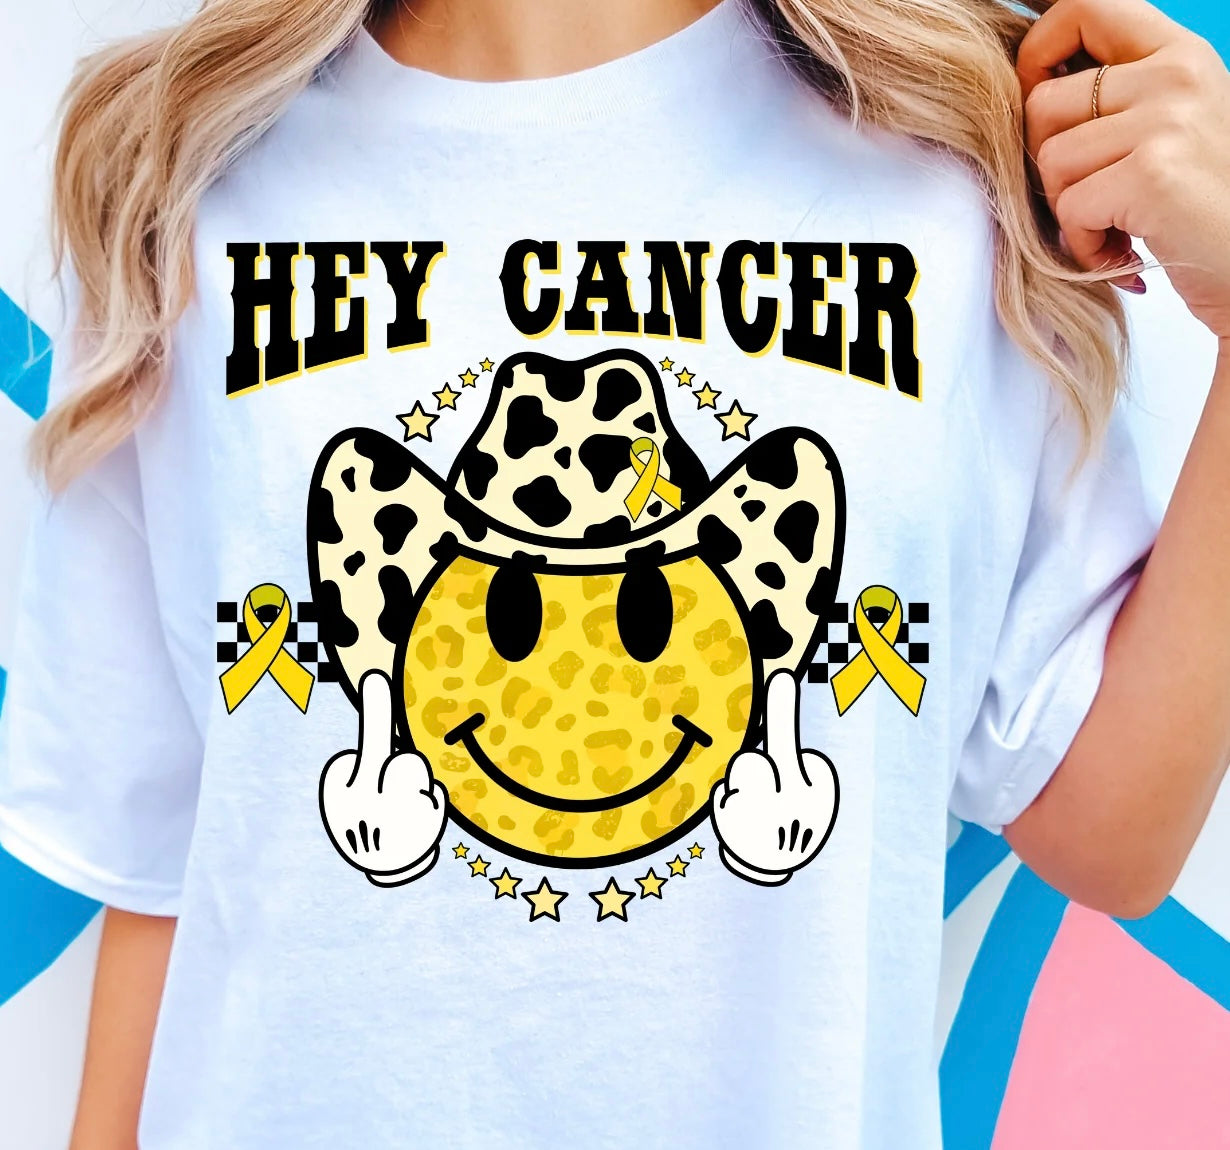 Hey Cancer Tshirt